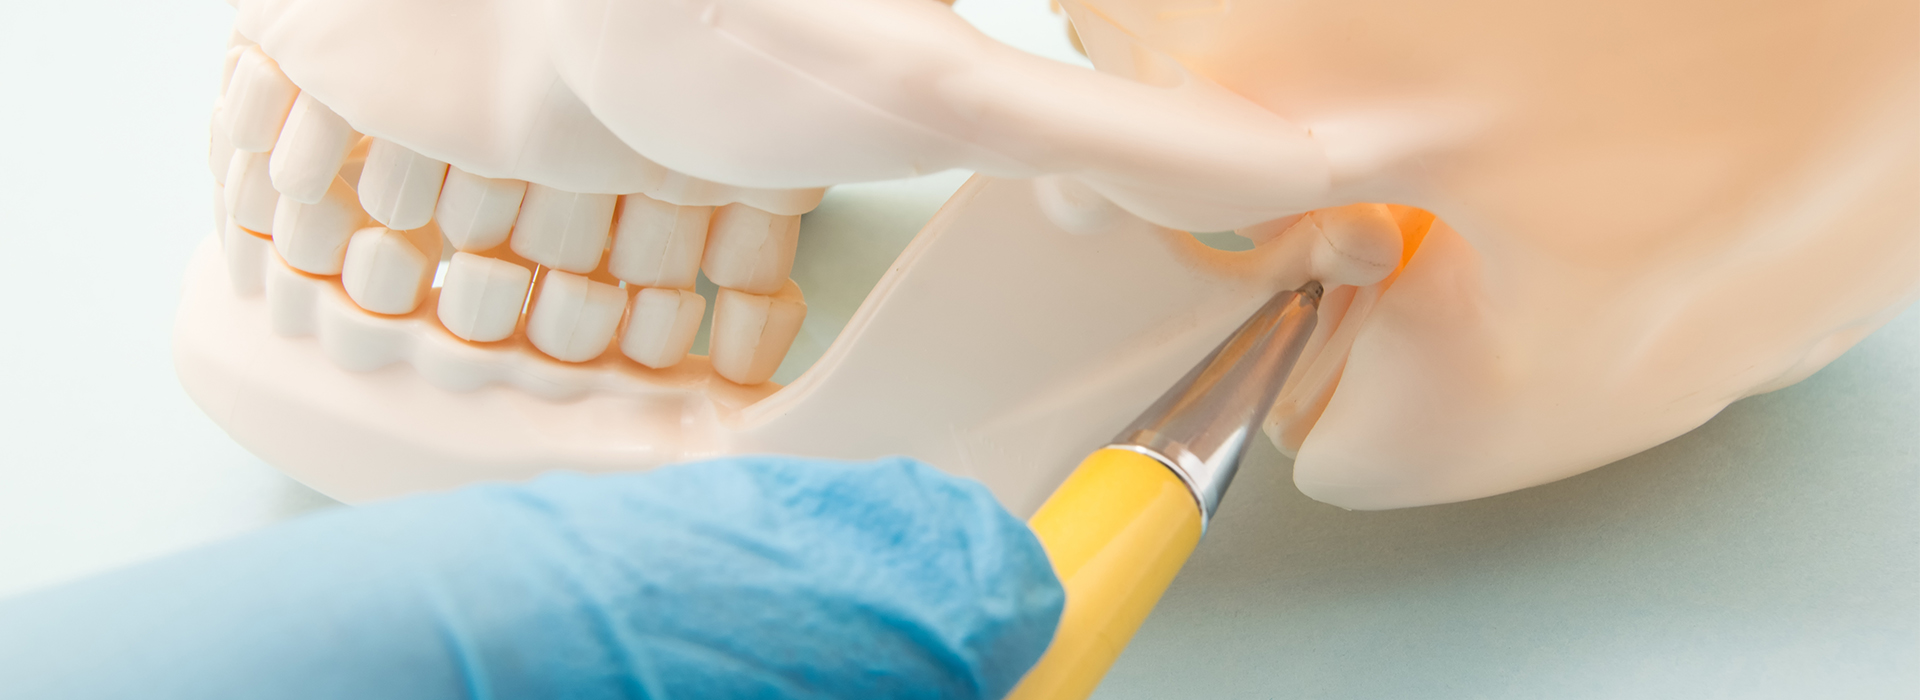 iSmile Dental | Sedation Dentistry, All-on-4 reg  and E4D